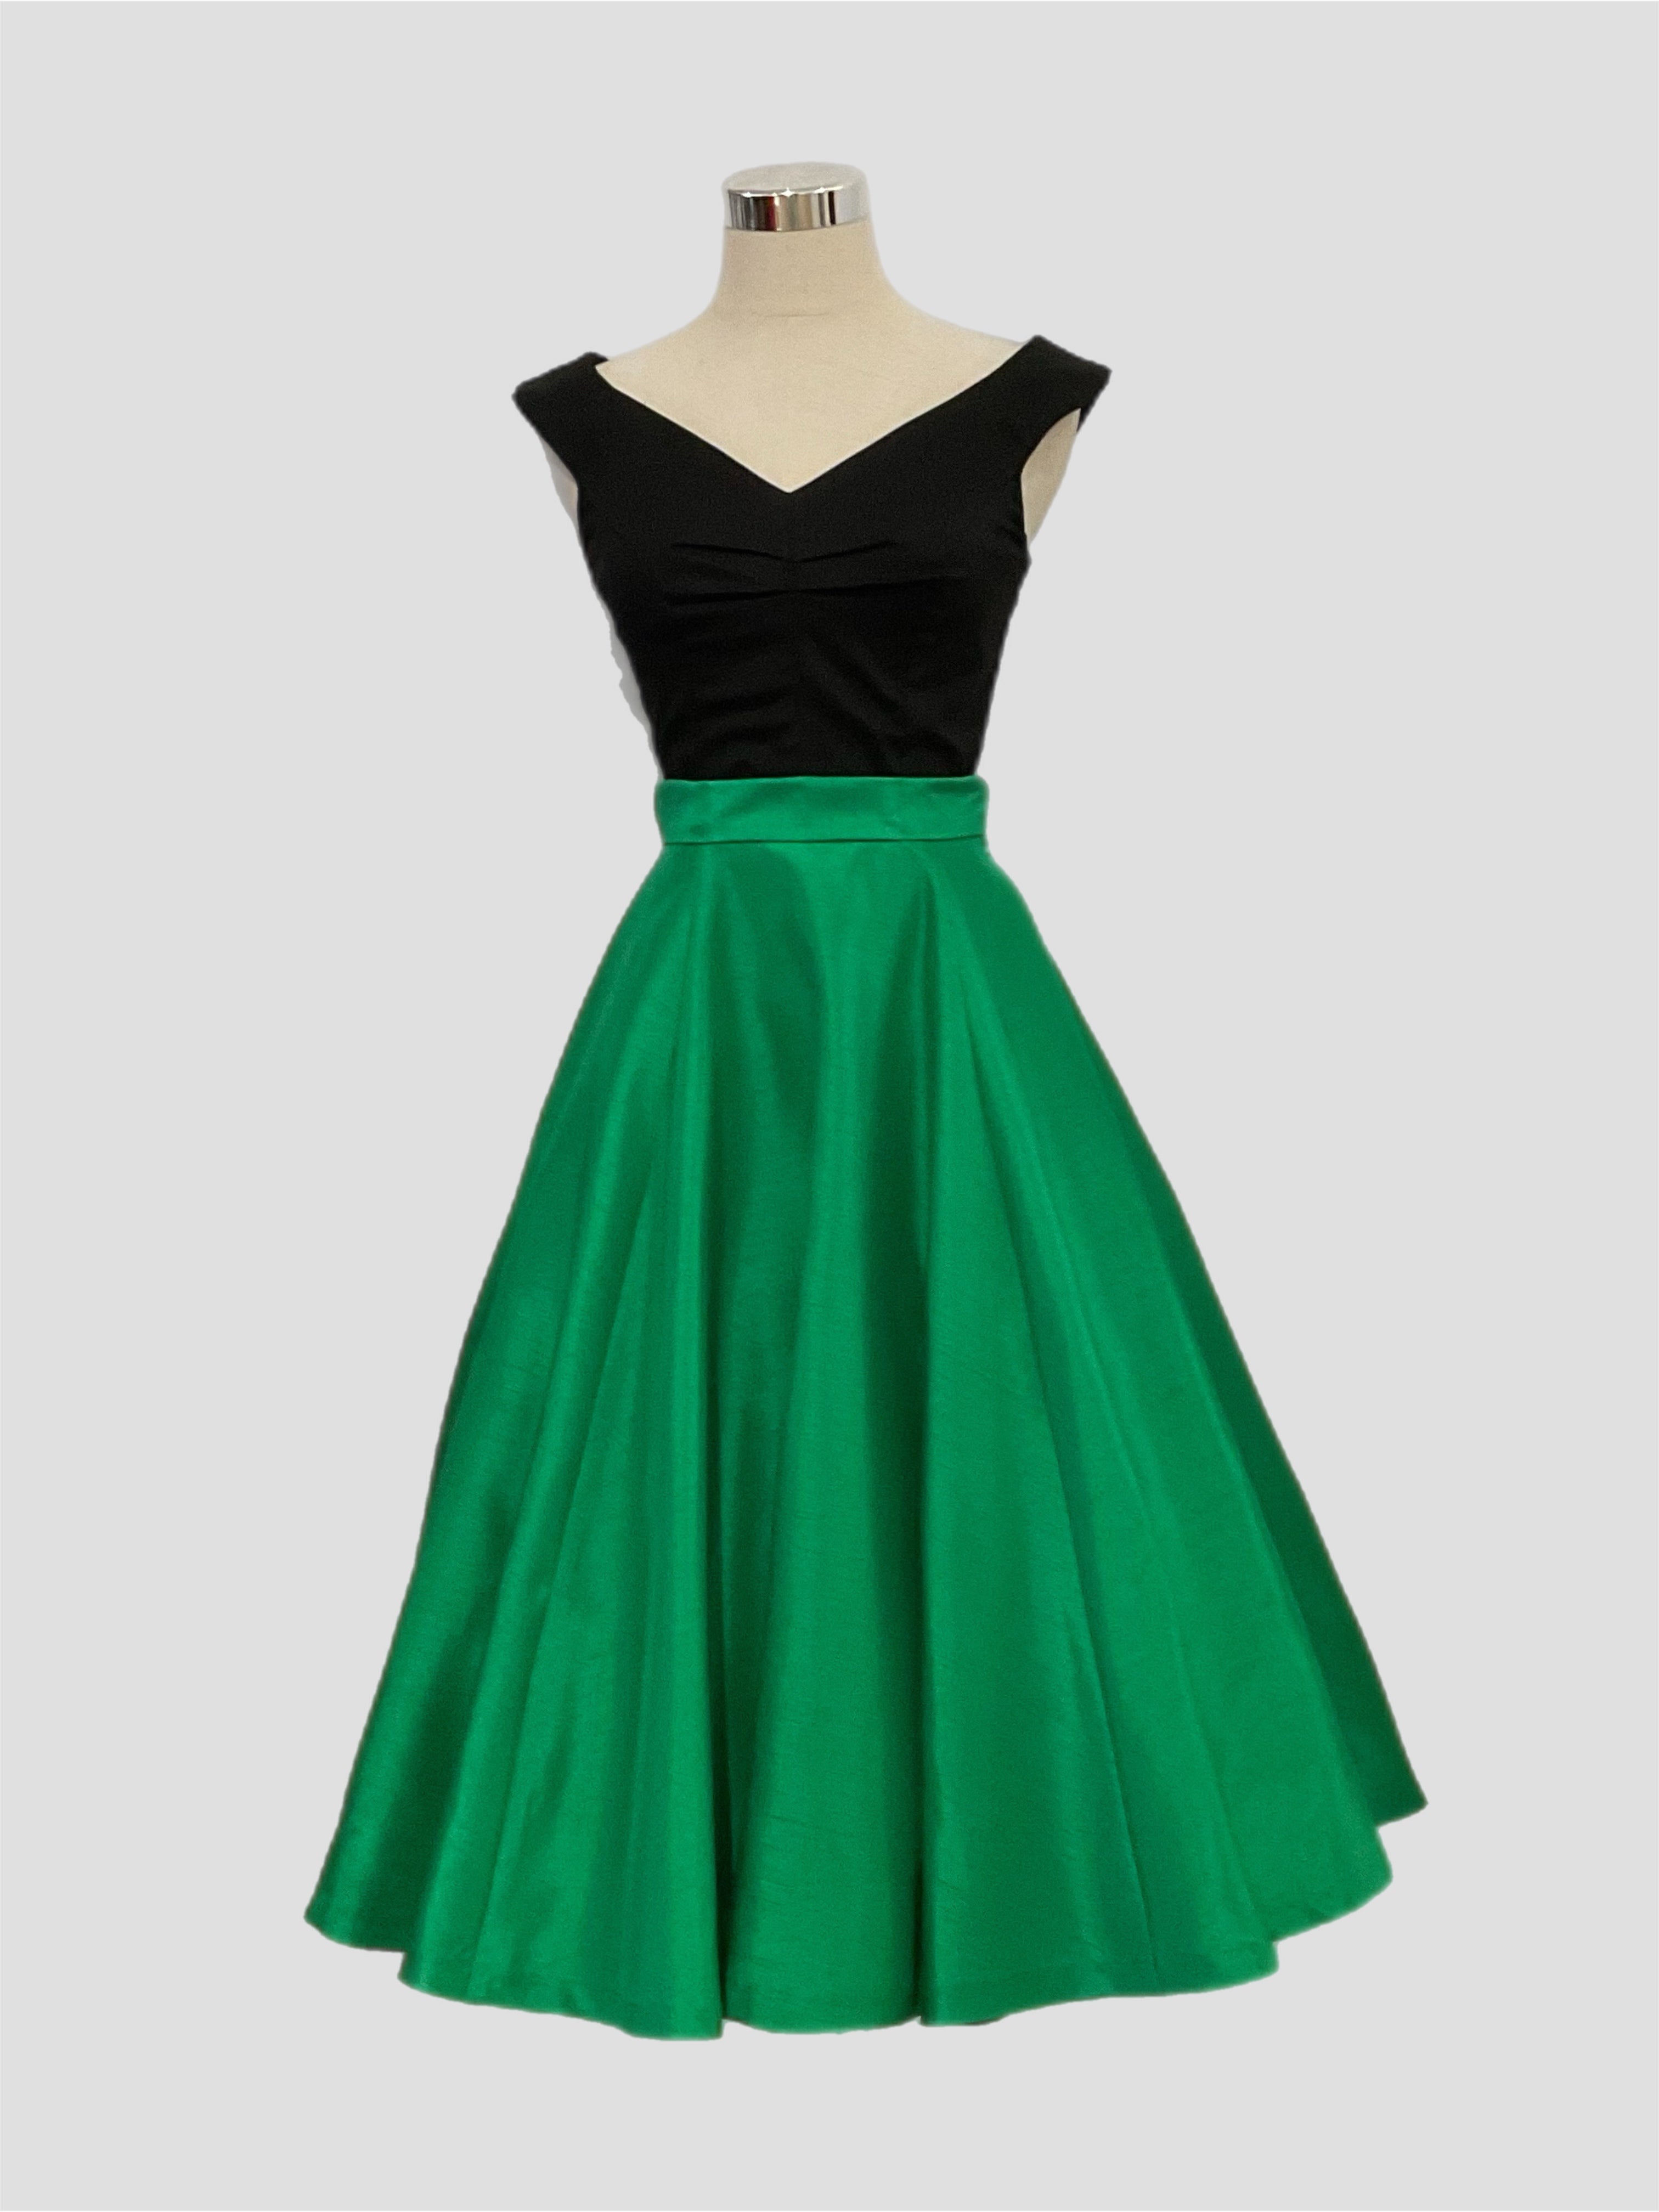 Grace Kelly Skirt  Green Shantung